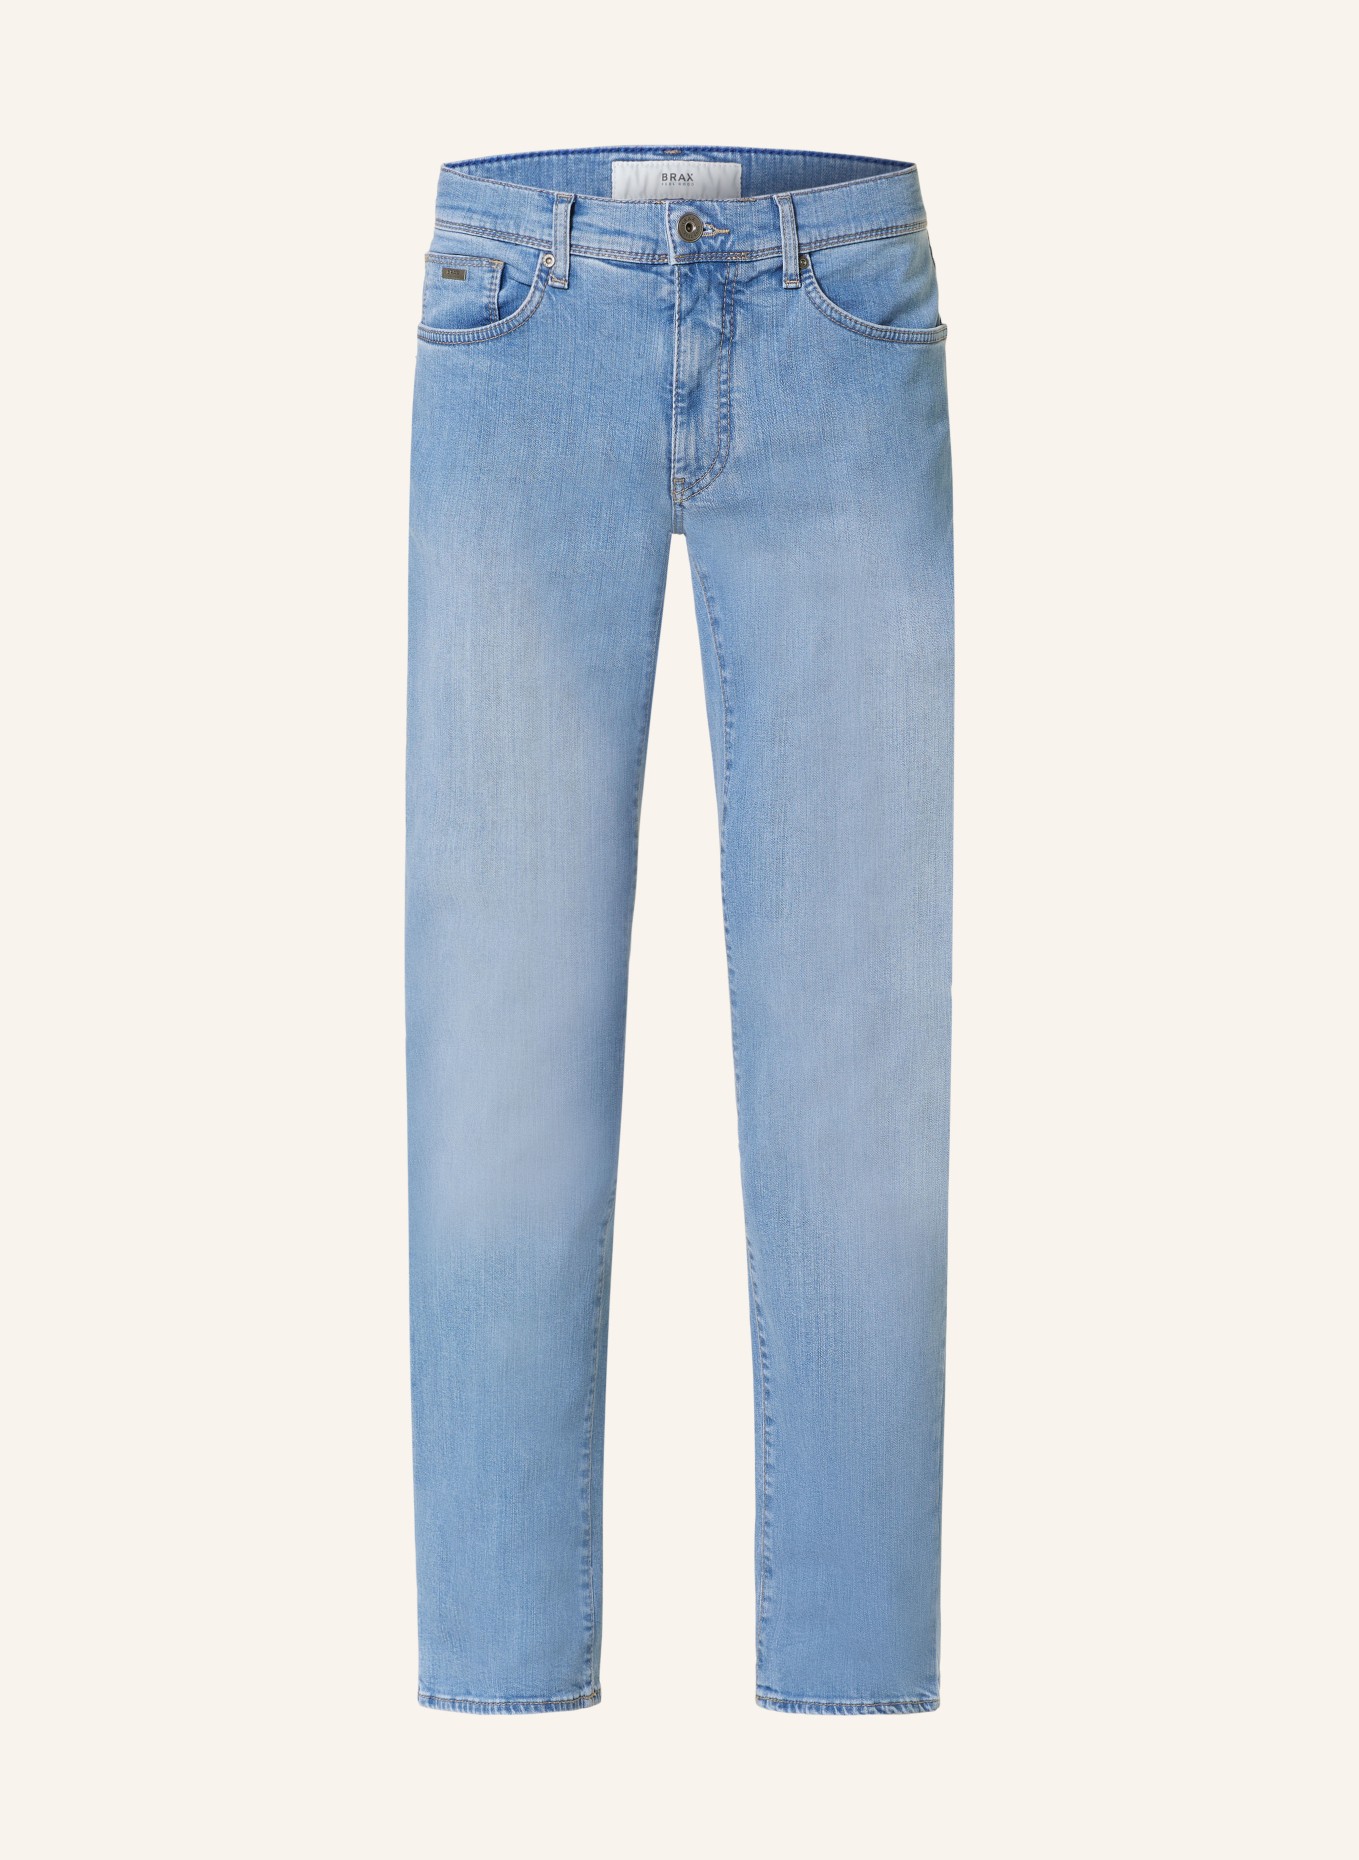 BRAX Jeans CADIZ Straight Fit, Farbe: 28 LIGHT BLUE USED (Bild 1)